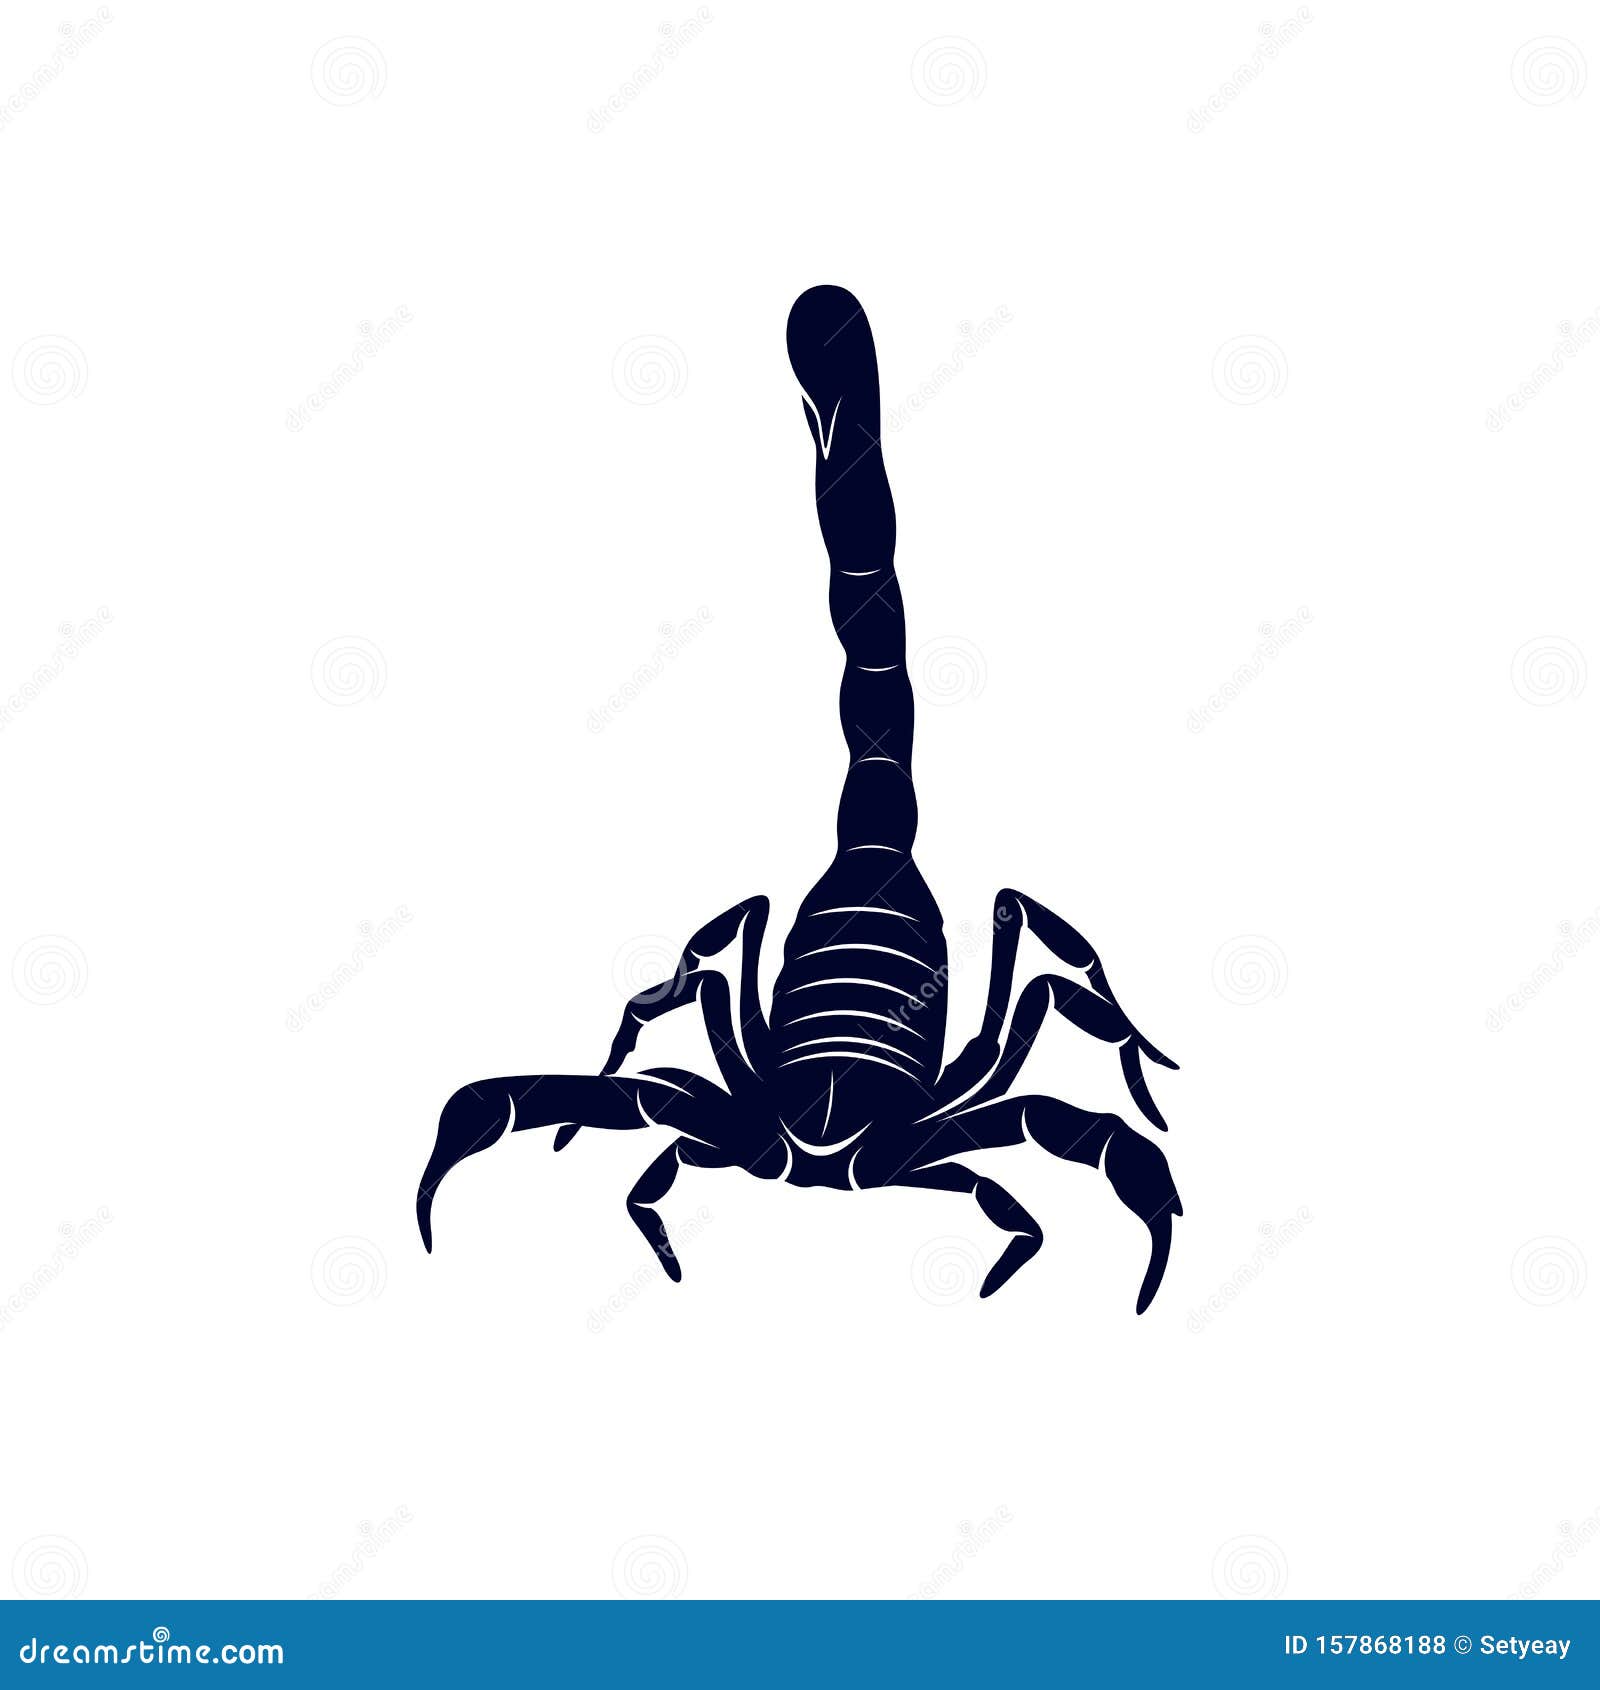 Vecteur De Logo De Scorpion, Image Vectorielle Pour Le Tatouage ...